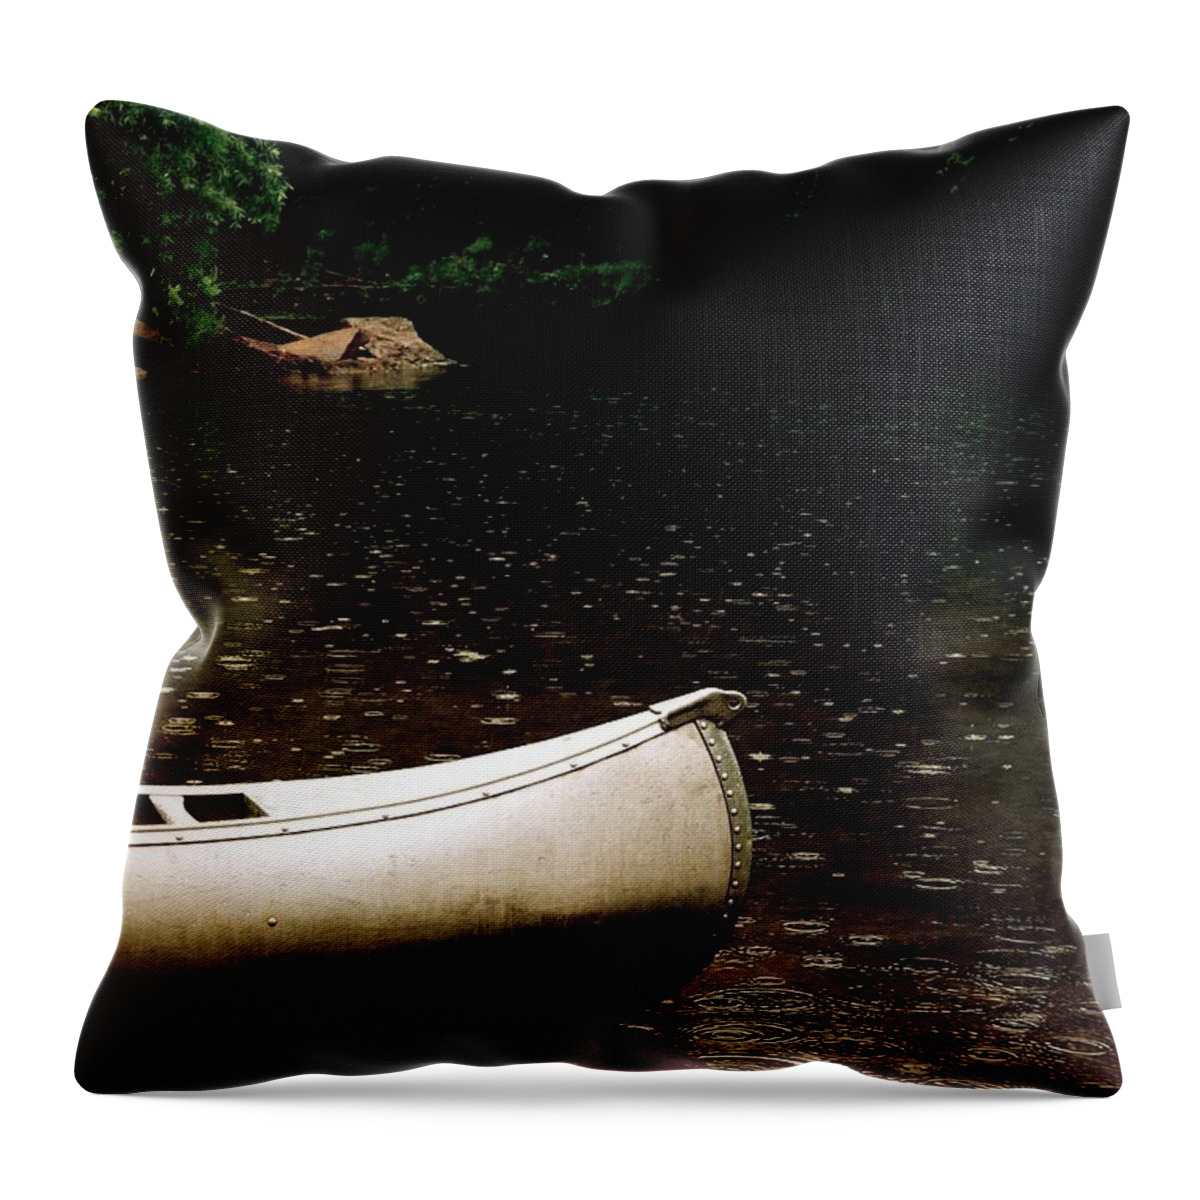 Canoe Throw Pillow featuring the photograph Canoe by Melisa Elliott